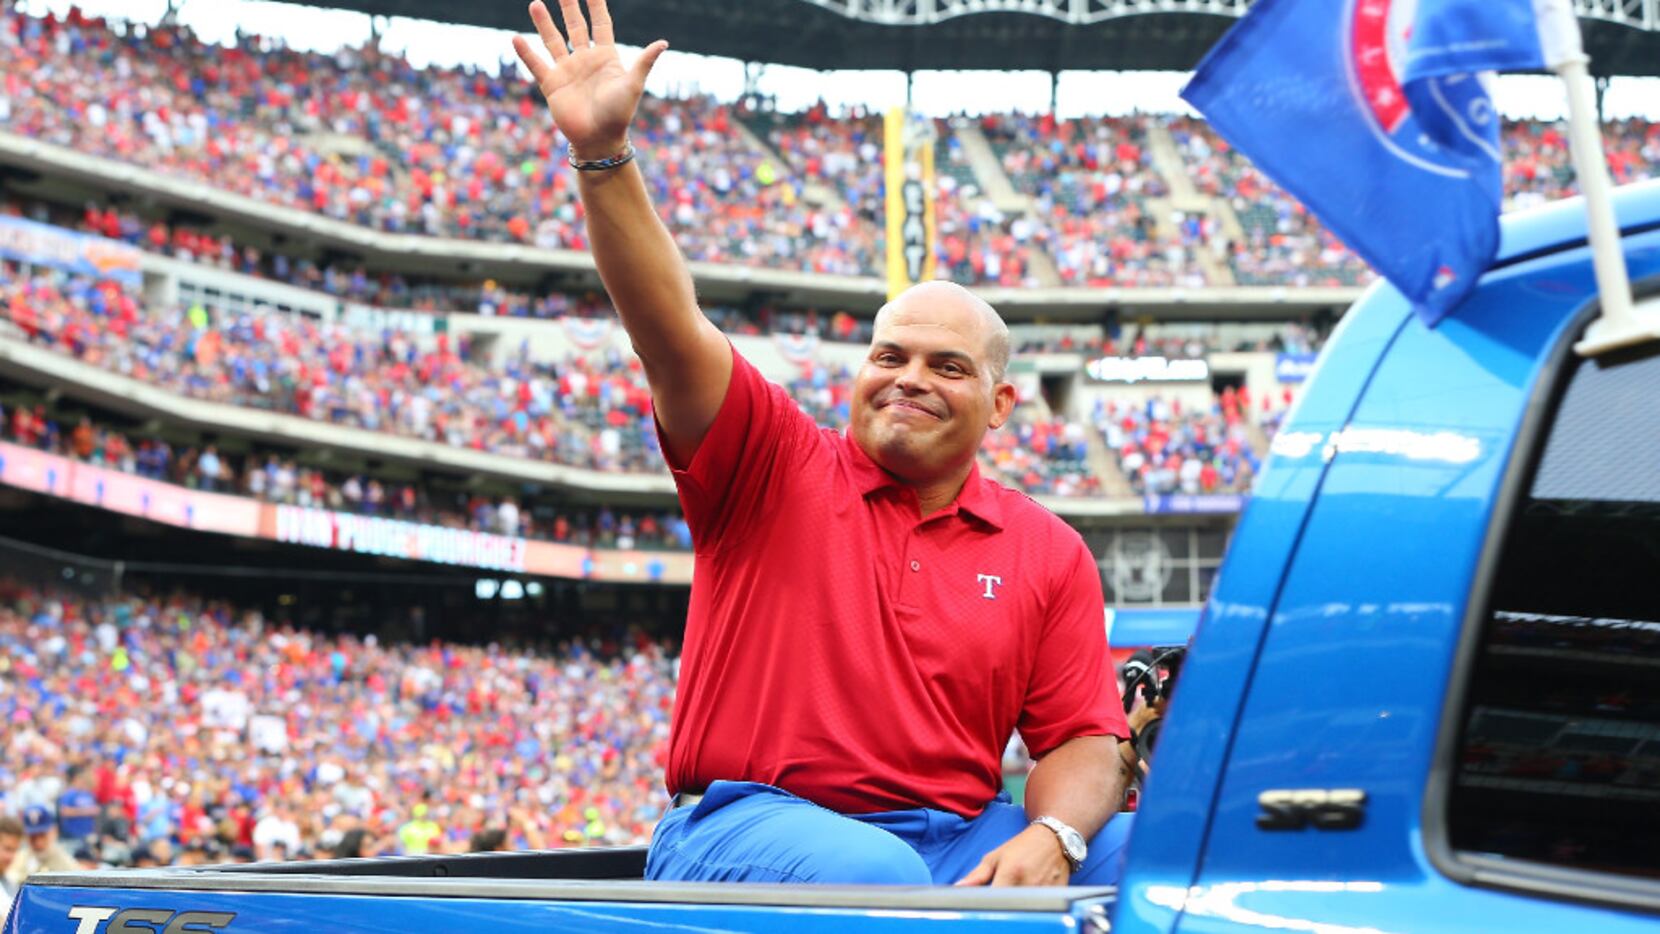 Texas Rangers plan to retire Ivan Rodriguez's jersey No. 7